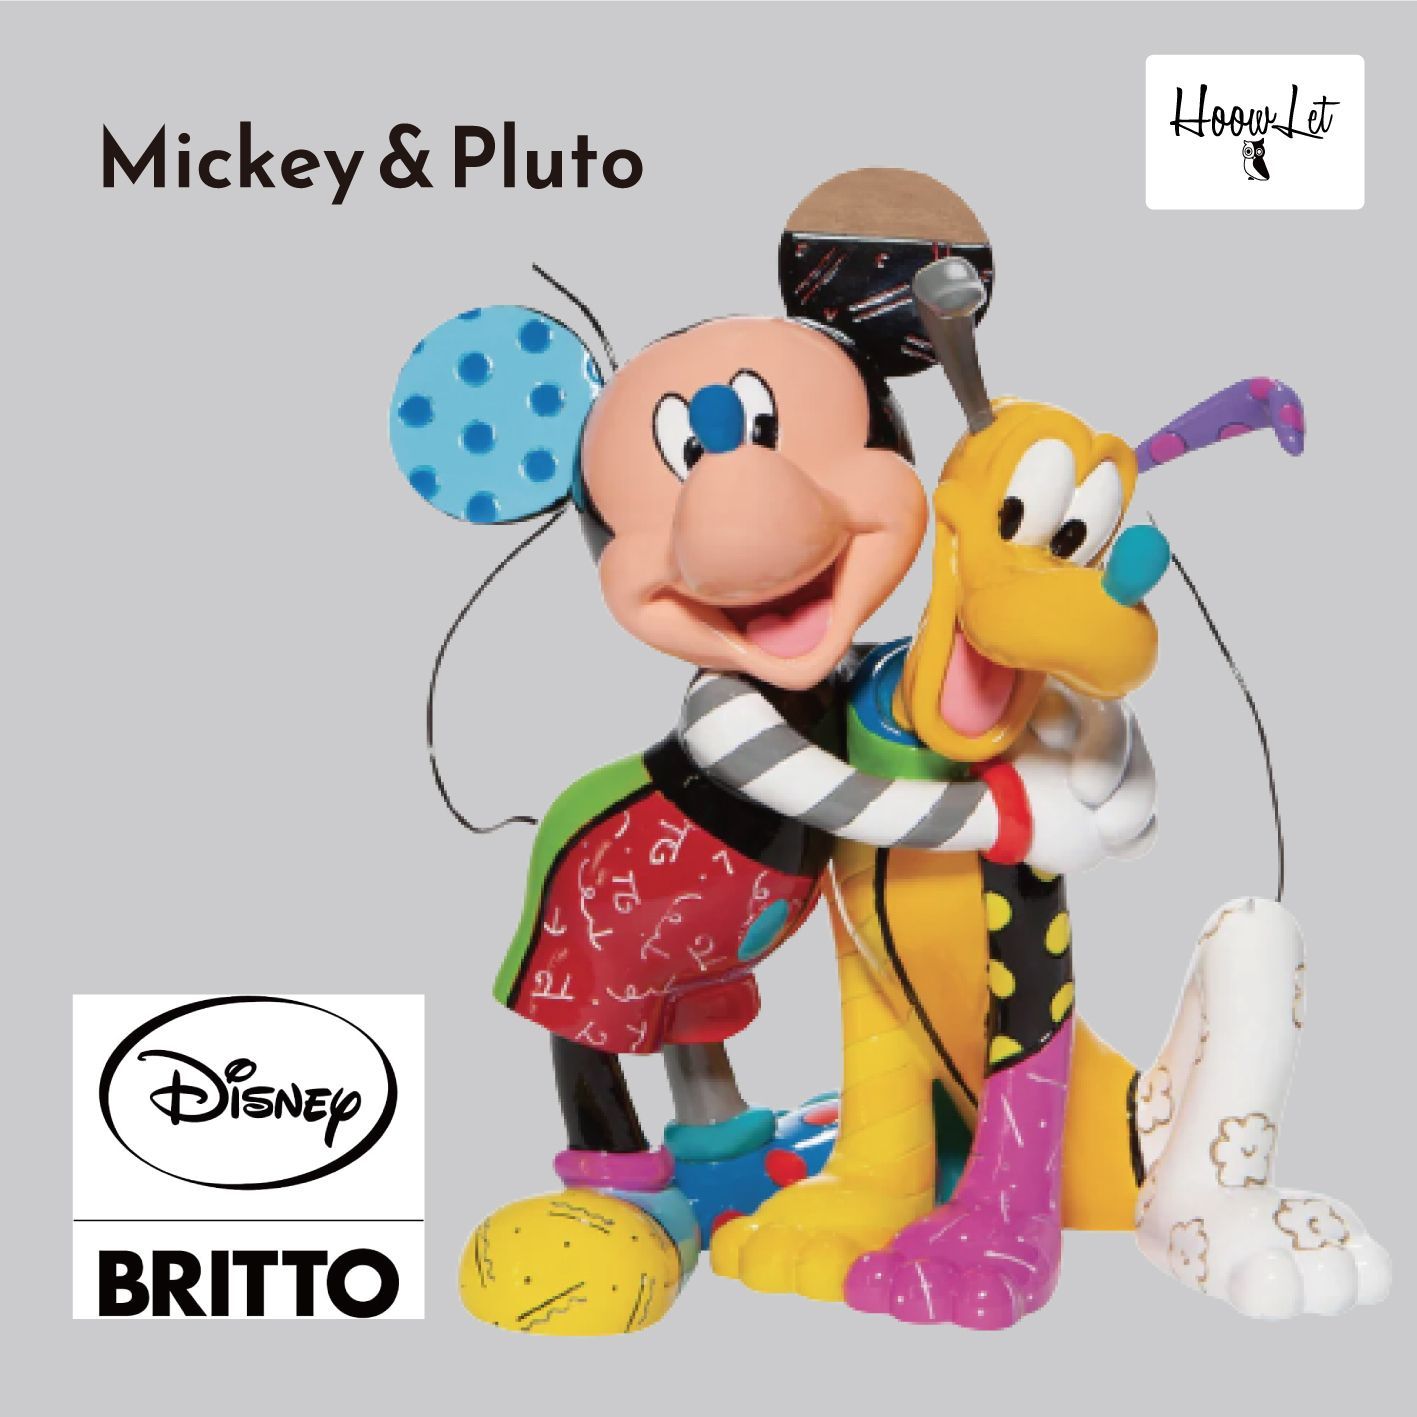 エネスコ ディズニー ブリット ミッキー プルート フィギュア 人形 置物 インテリア プレゼント Enesco Disney by Romero  Britto Mickey Mouse Hugging Pluto Figurine